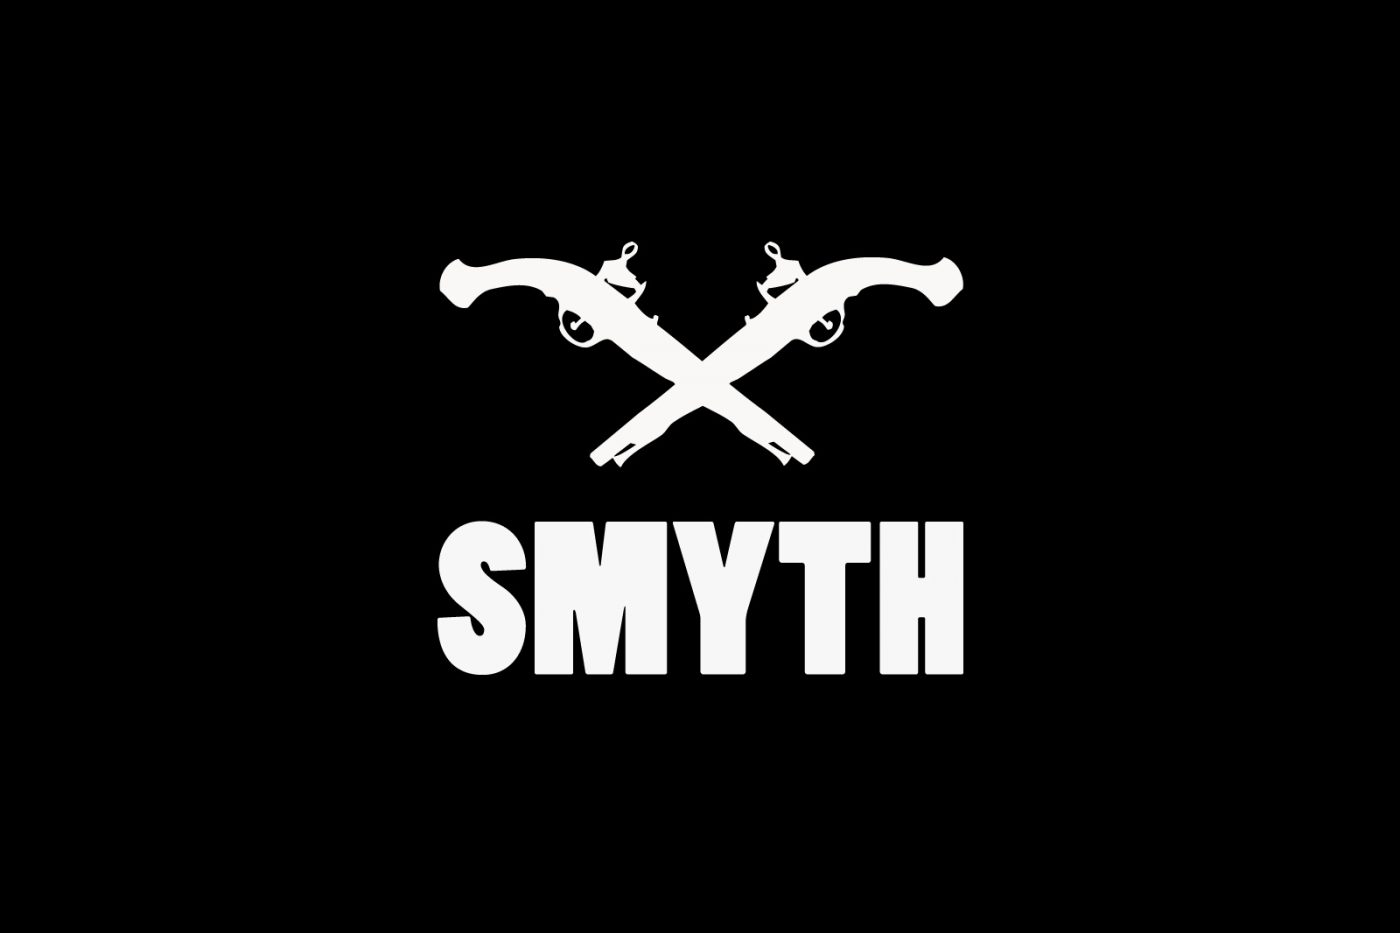 Smyth